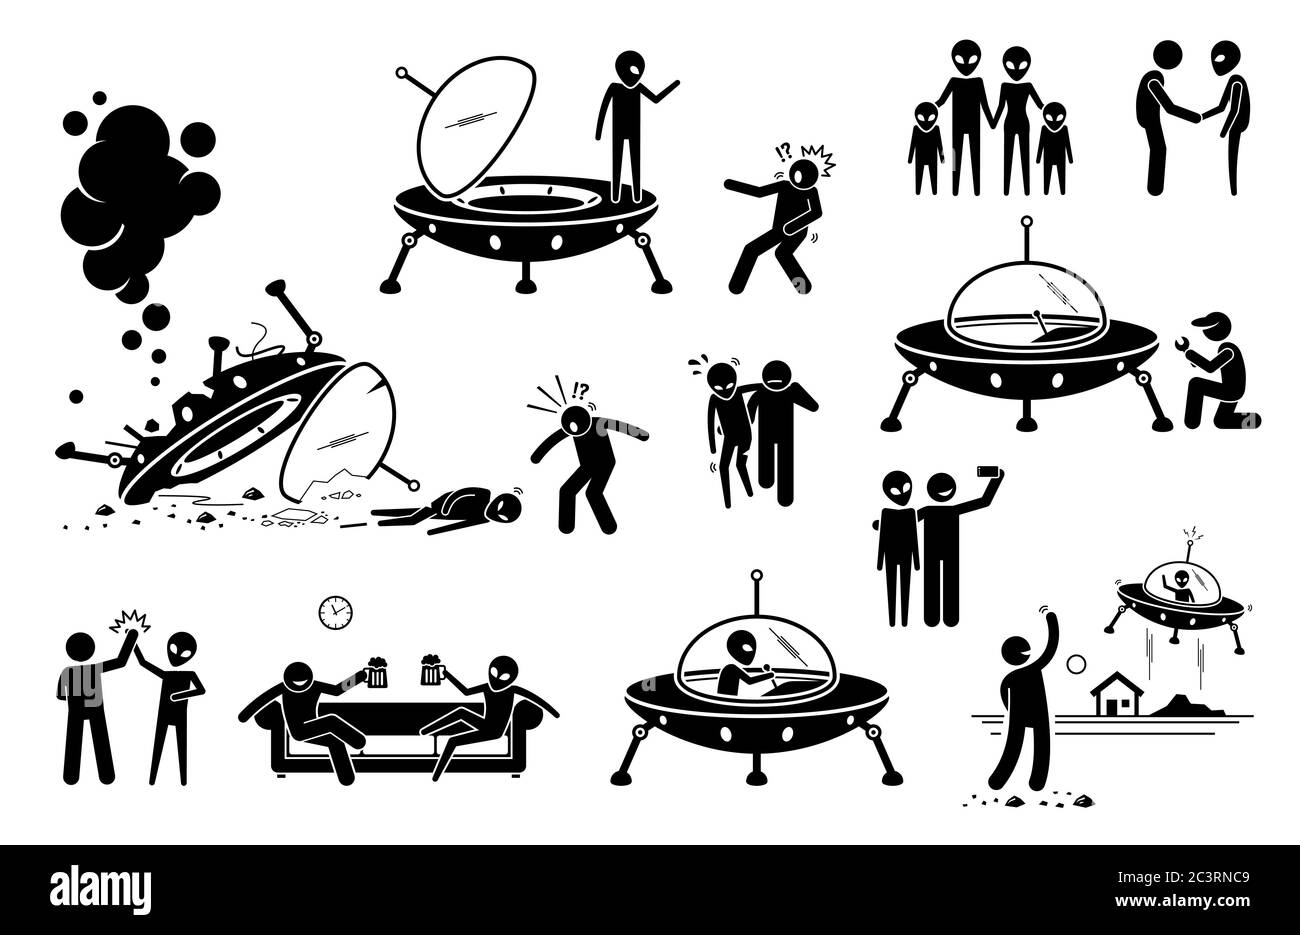 Alieno UFO e umano primo contatto e diventare amico. Illustrazione vettoriale di UFO alieno arrivare al pianeta Terra e crash la navicella spaziale. Uomo salvataggio al Illustrazione Vettoriale